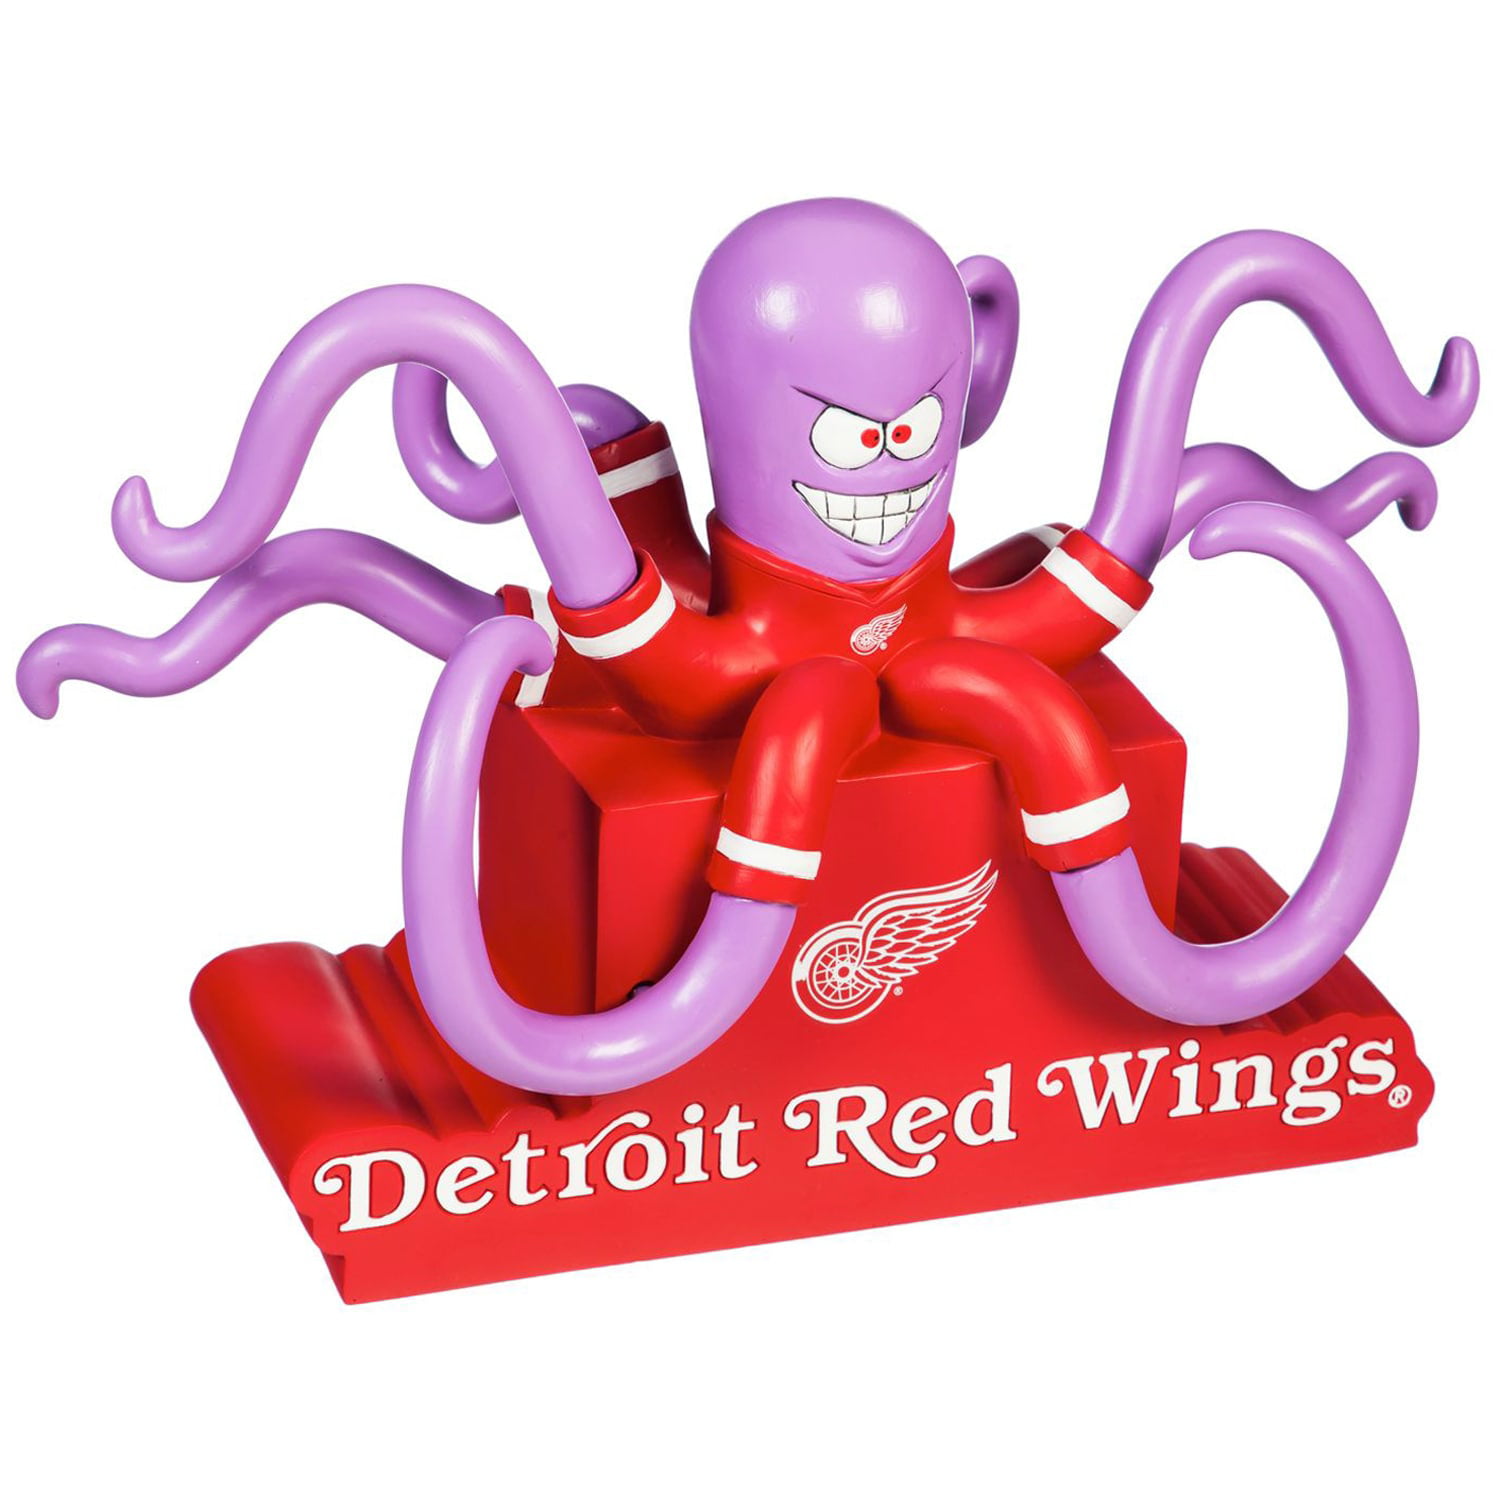 Al the Octopus  Detroit red wings, Red wings, Wings